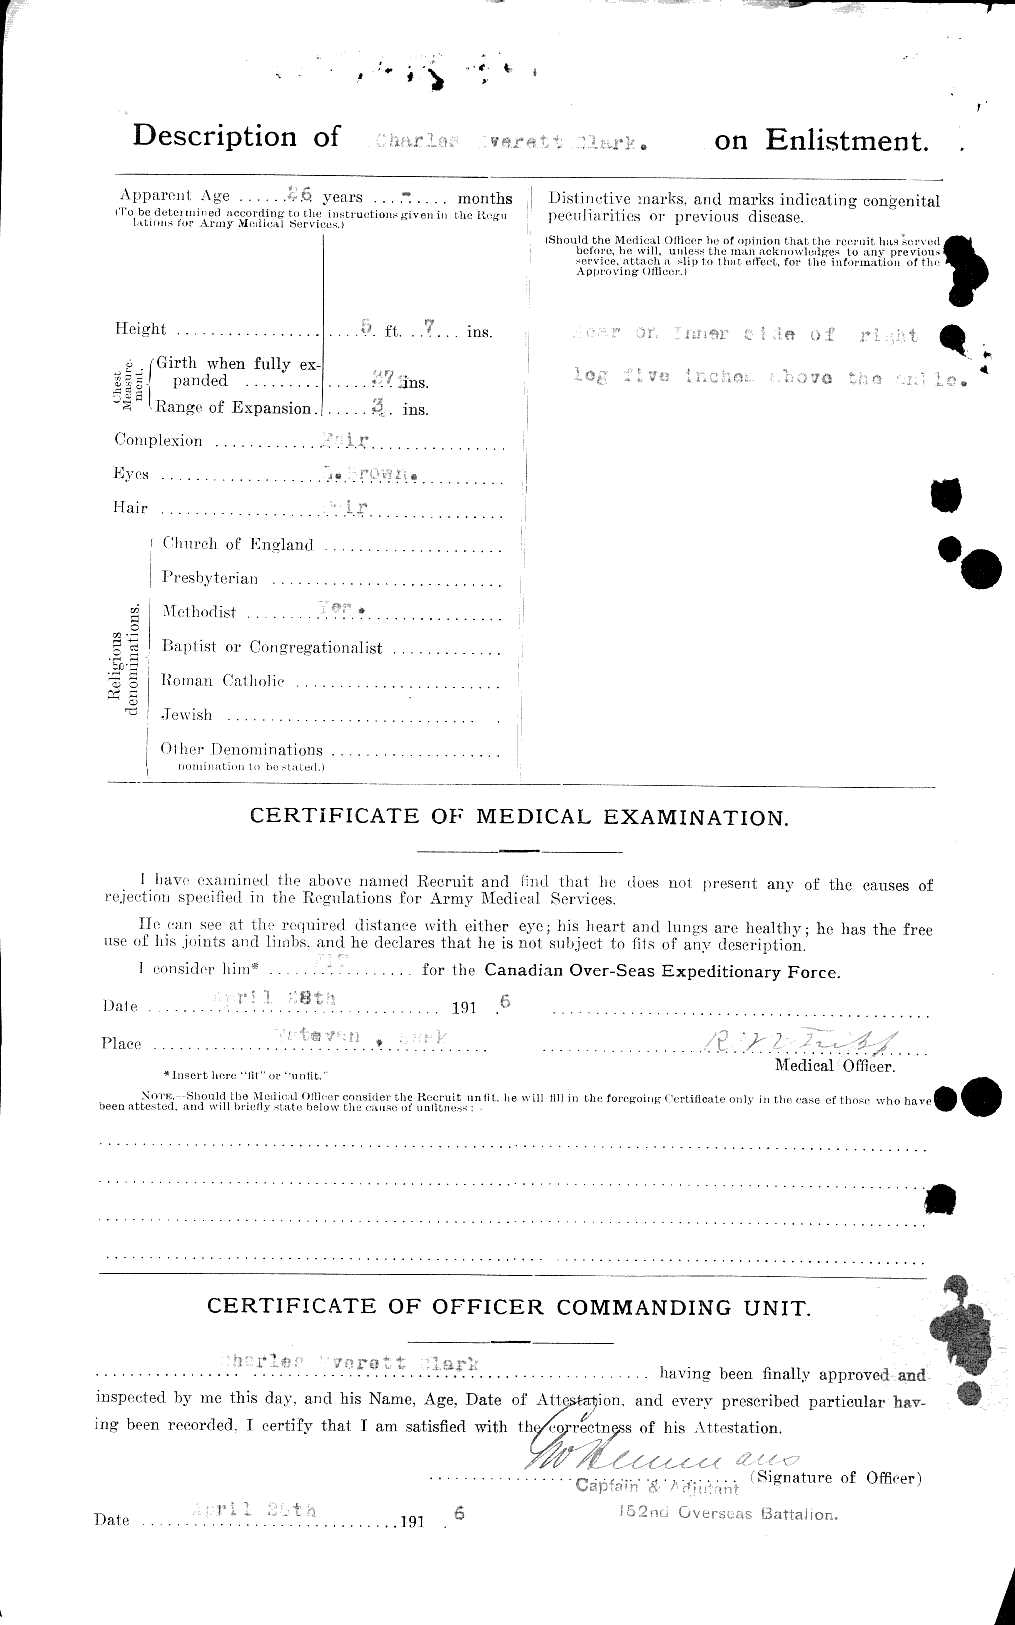 Dossiers du Personnel de la Première Guerre mondiale - CEC 022926b